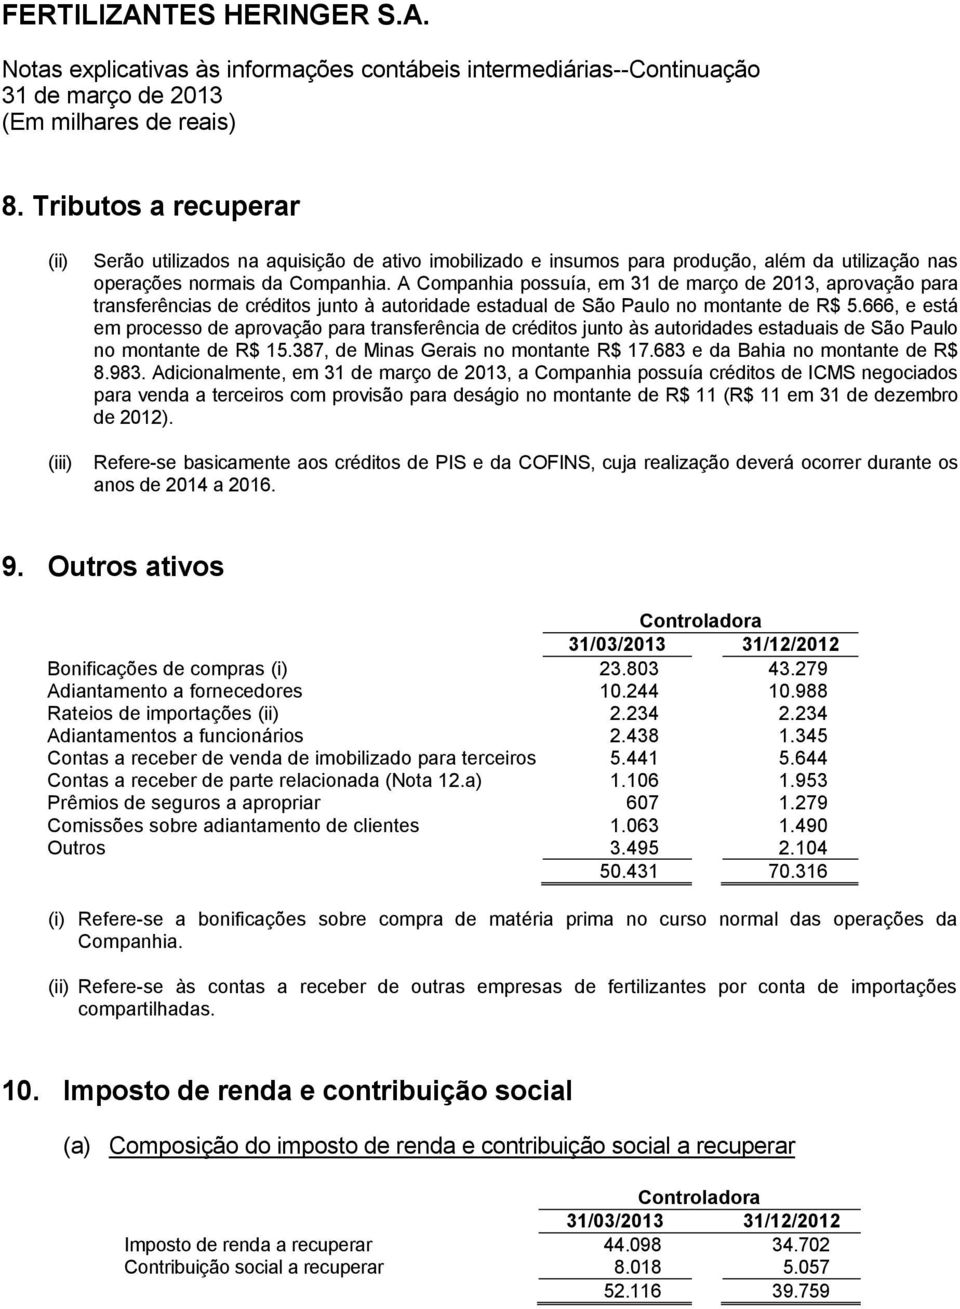 666, e está em processo de aprovação para transferência de créditos junto às autoridades estaduais de São Paulo no montante de R$ 15.387, de Minas Gerais no montante R$ 17.